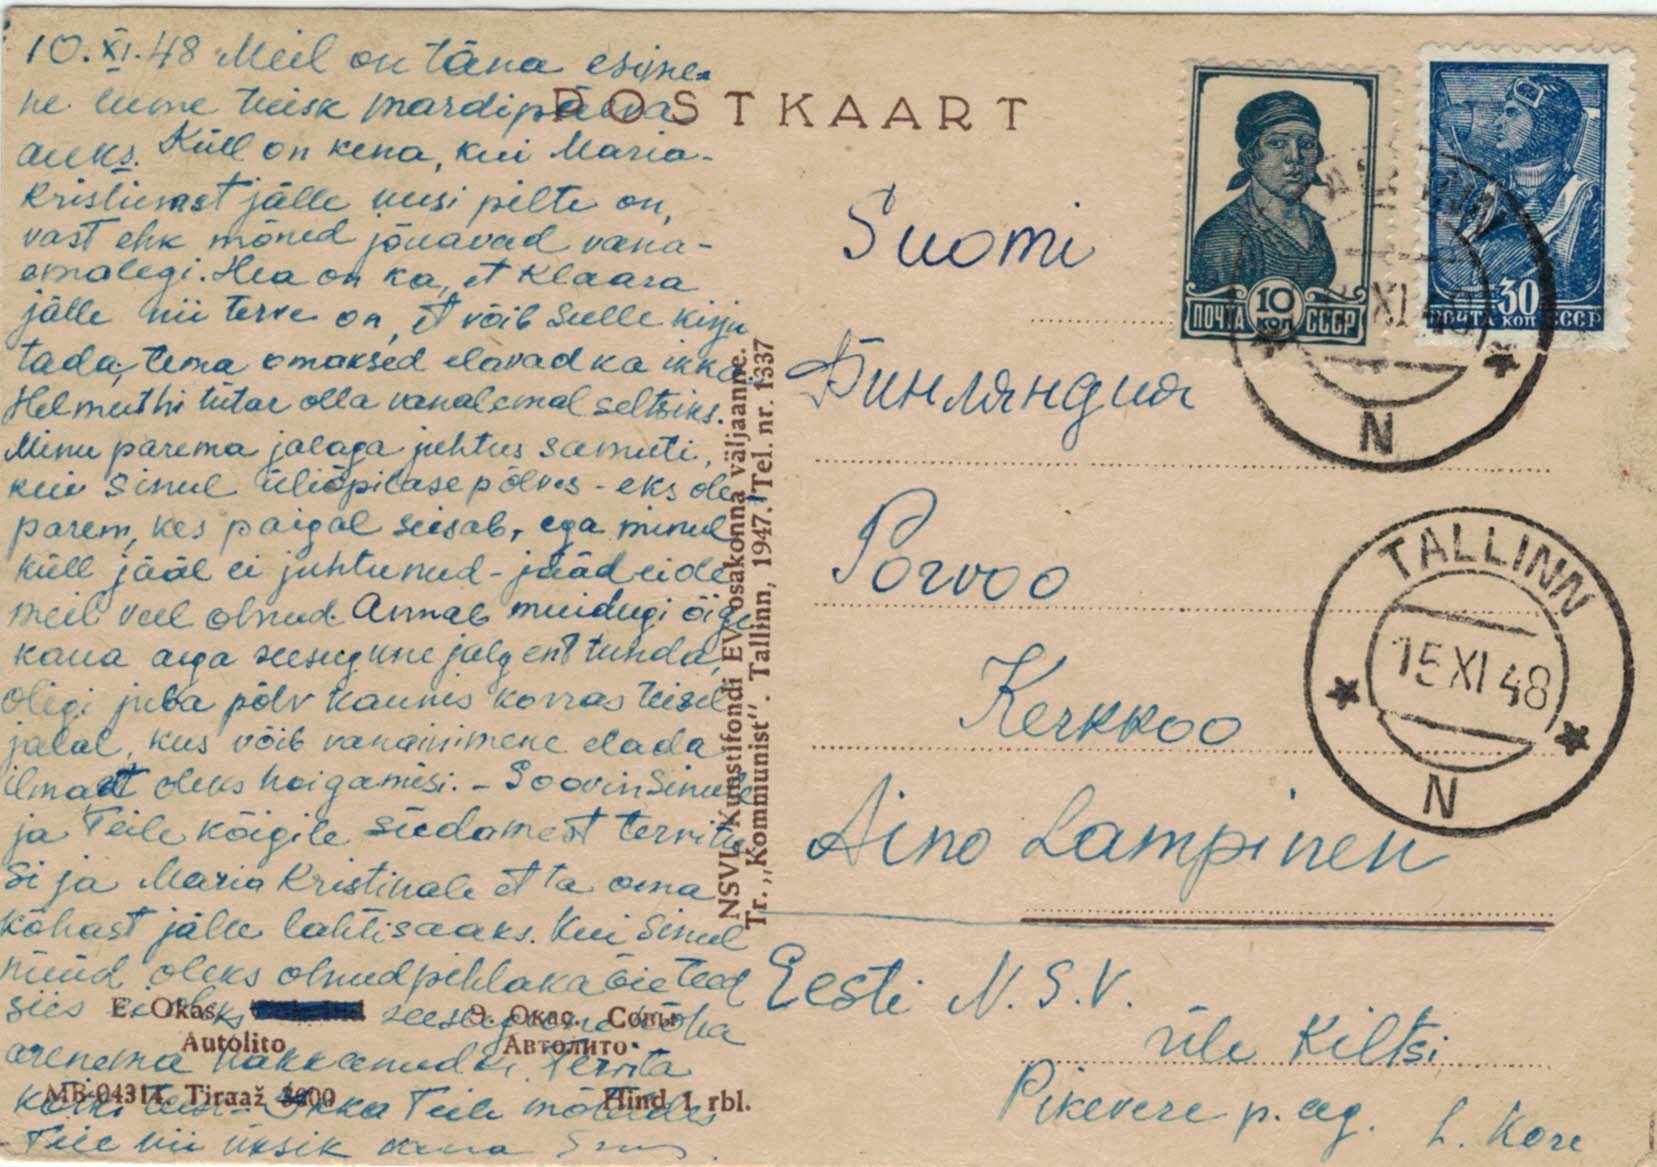 Postkarte mit weiter verwendetem Stempel Tallinn N